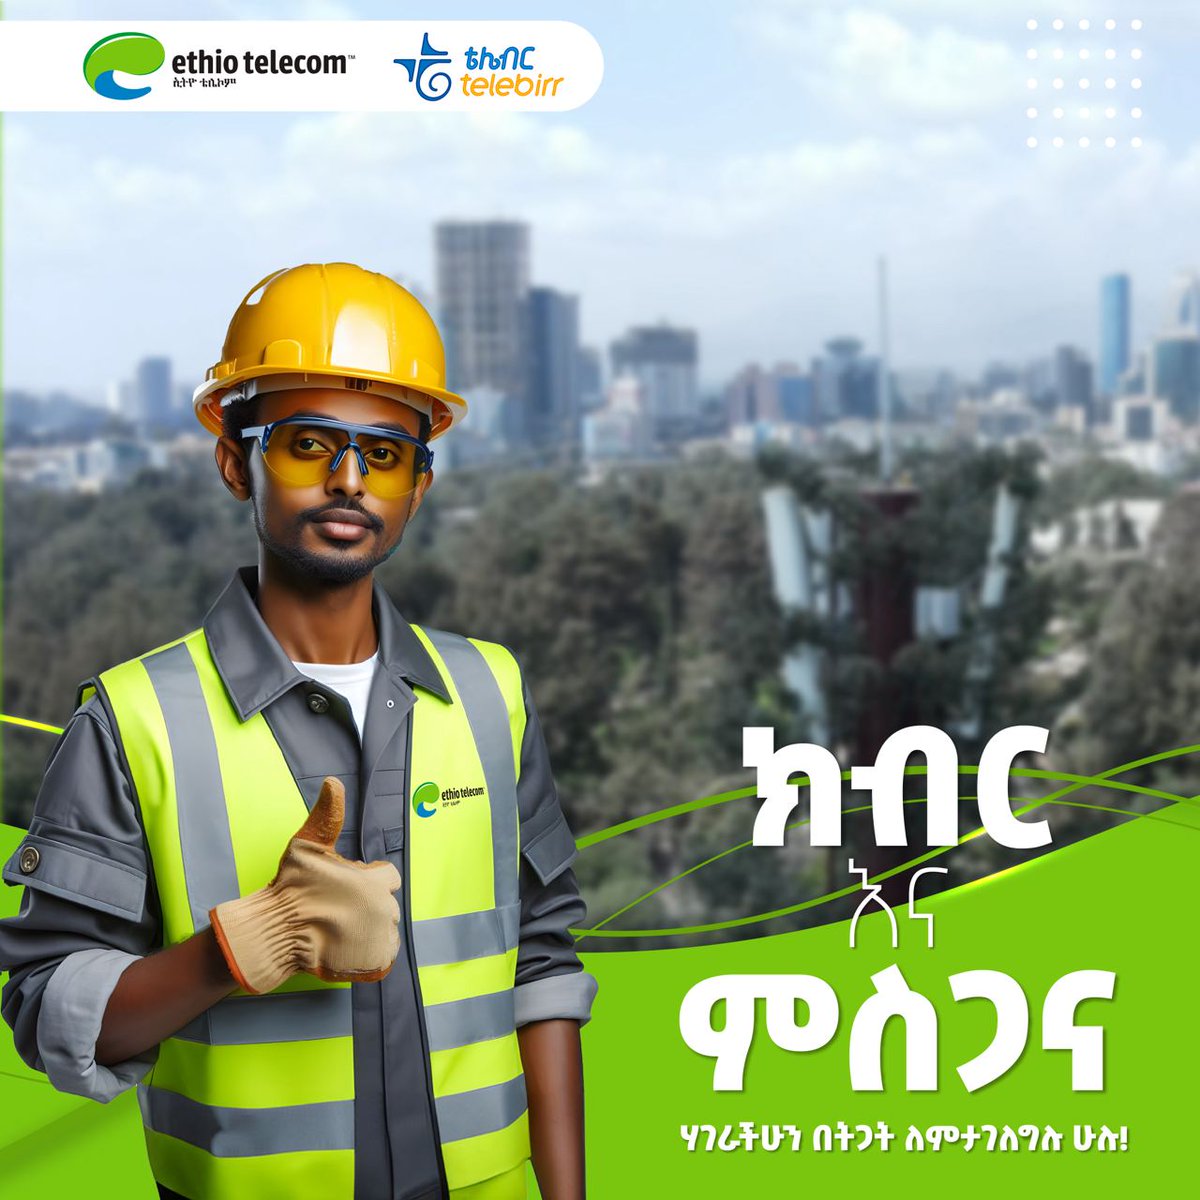 እንኳን ለዓለም አቀፍ የላብአደሮች ቀን አደረሳችሁ

#LabourDay
#Ethiotelecom #telebirr #DigitalAfrica #DigitalEthiopia #RealizingDigitalEthiopia